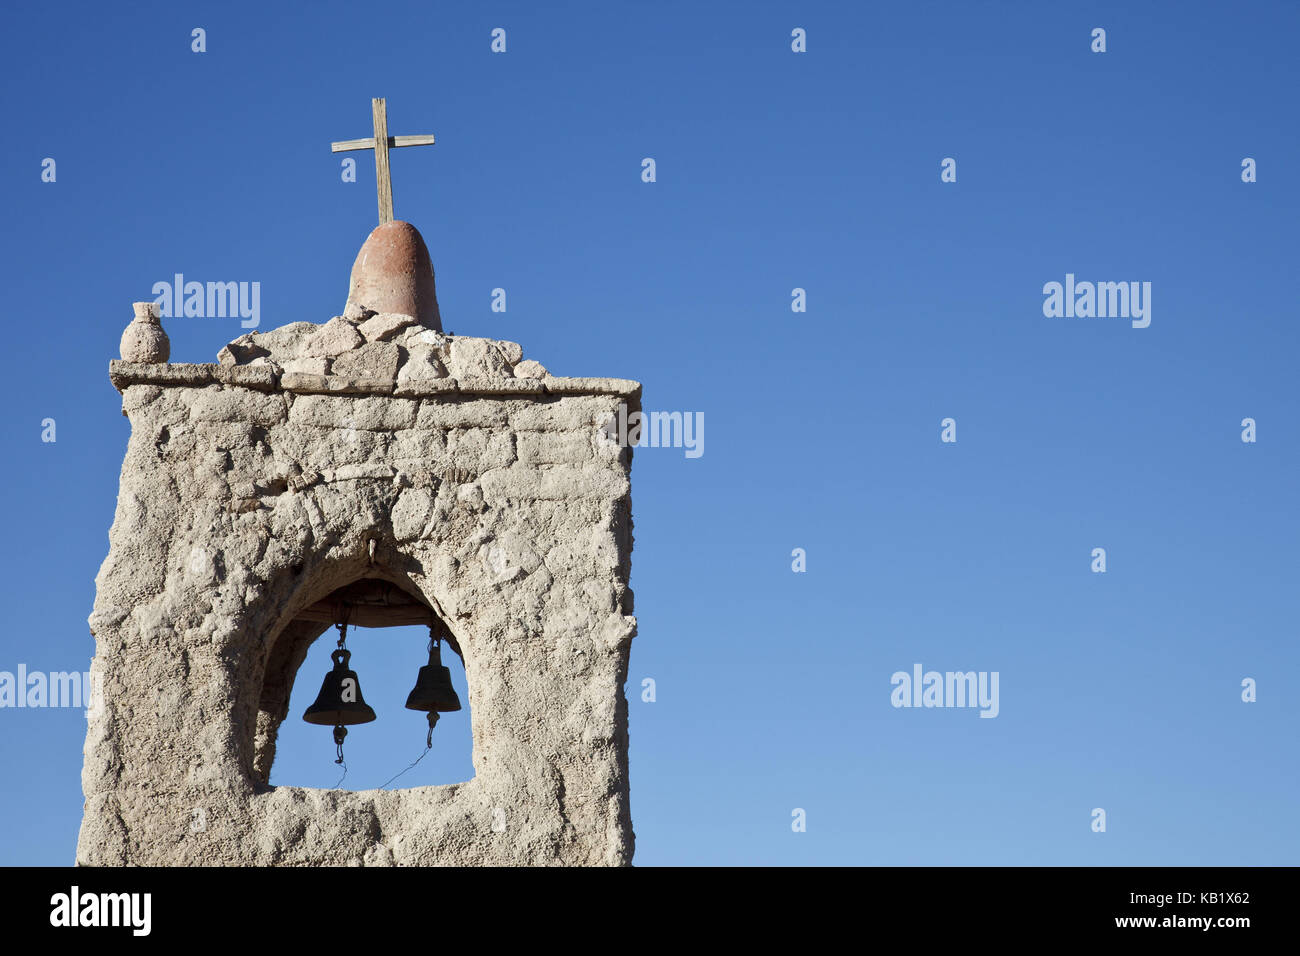 San juan church hi-res stock photography and images - Alamy